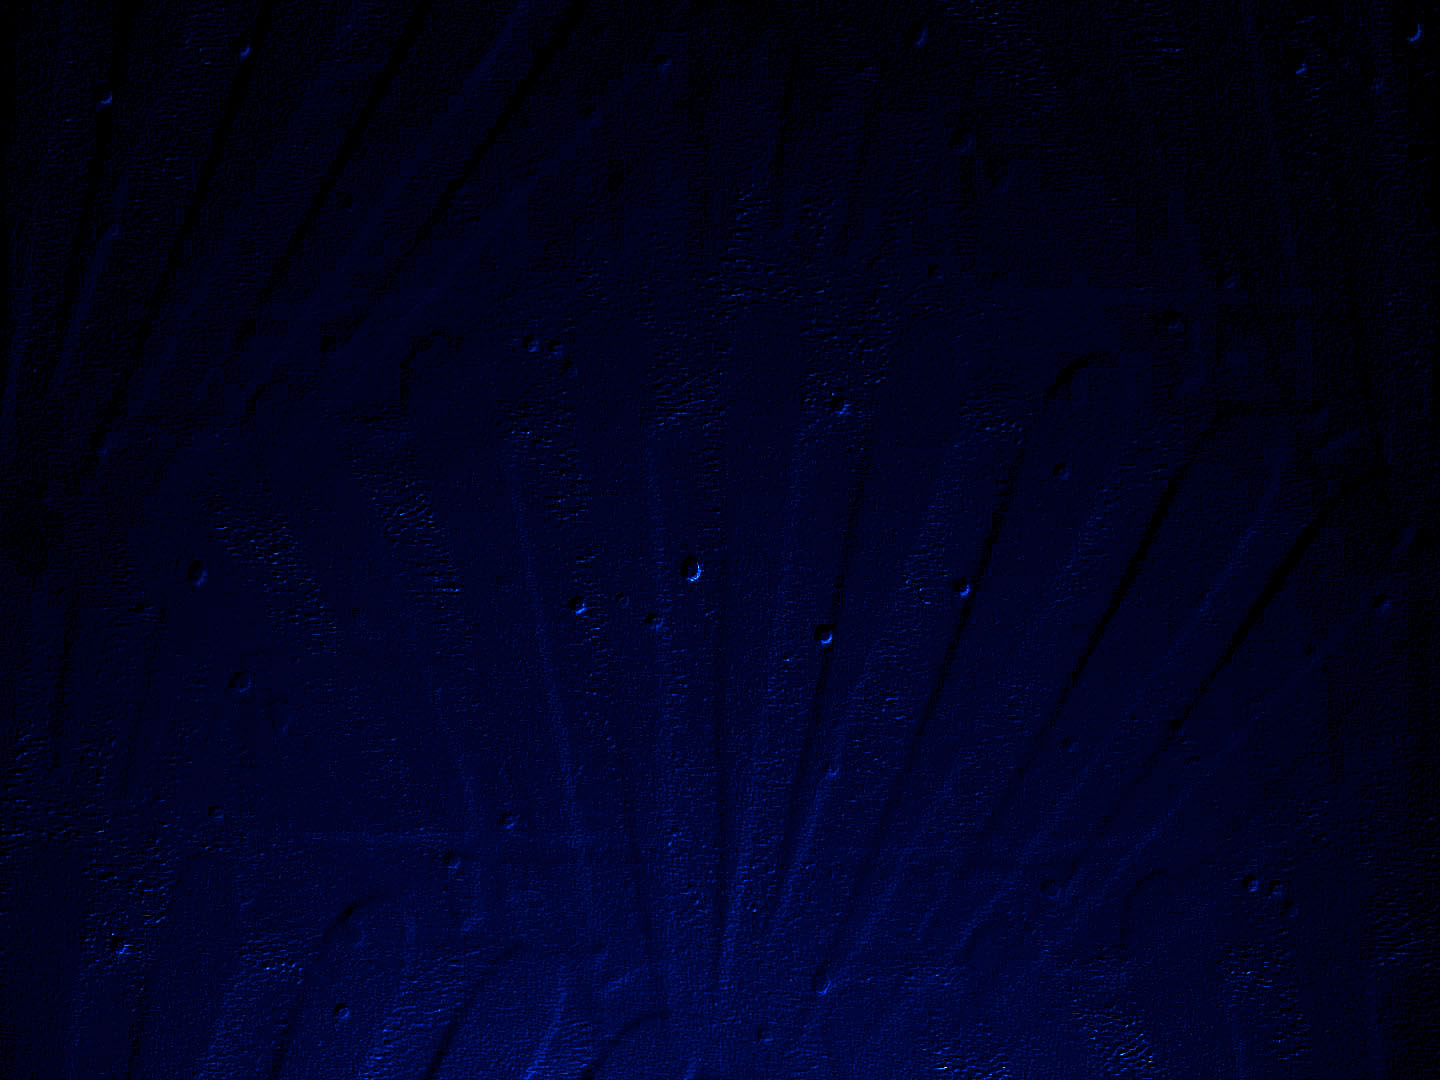 Dark Blue Wallpaper Background The darkblue screen